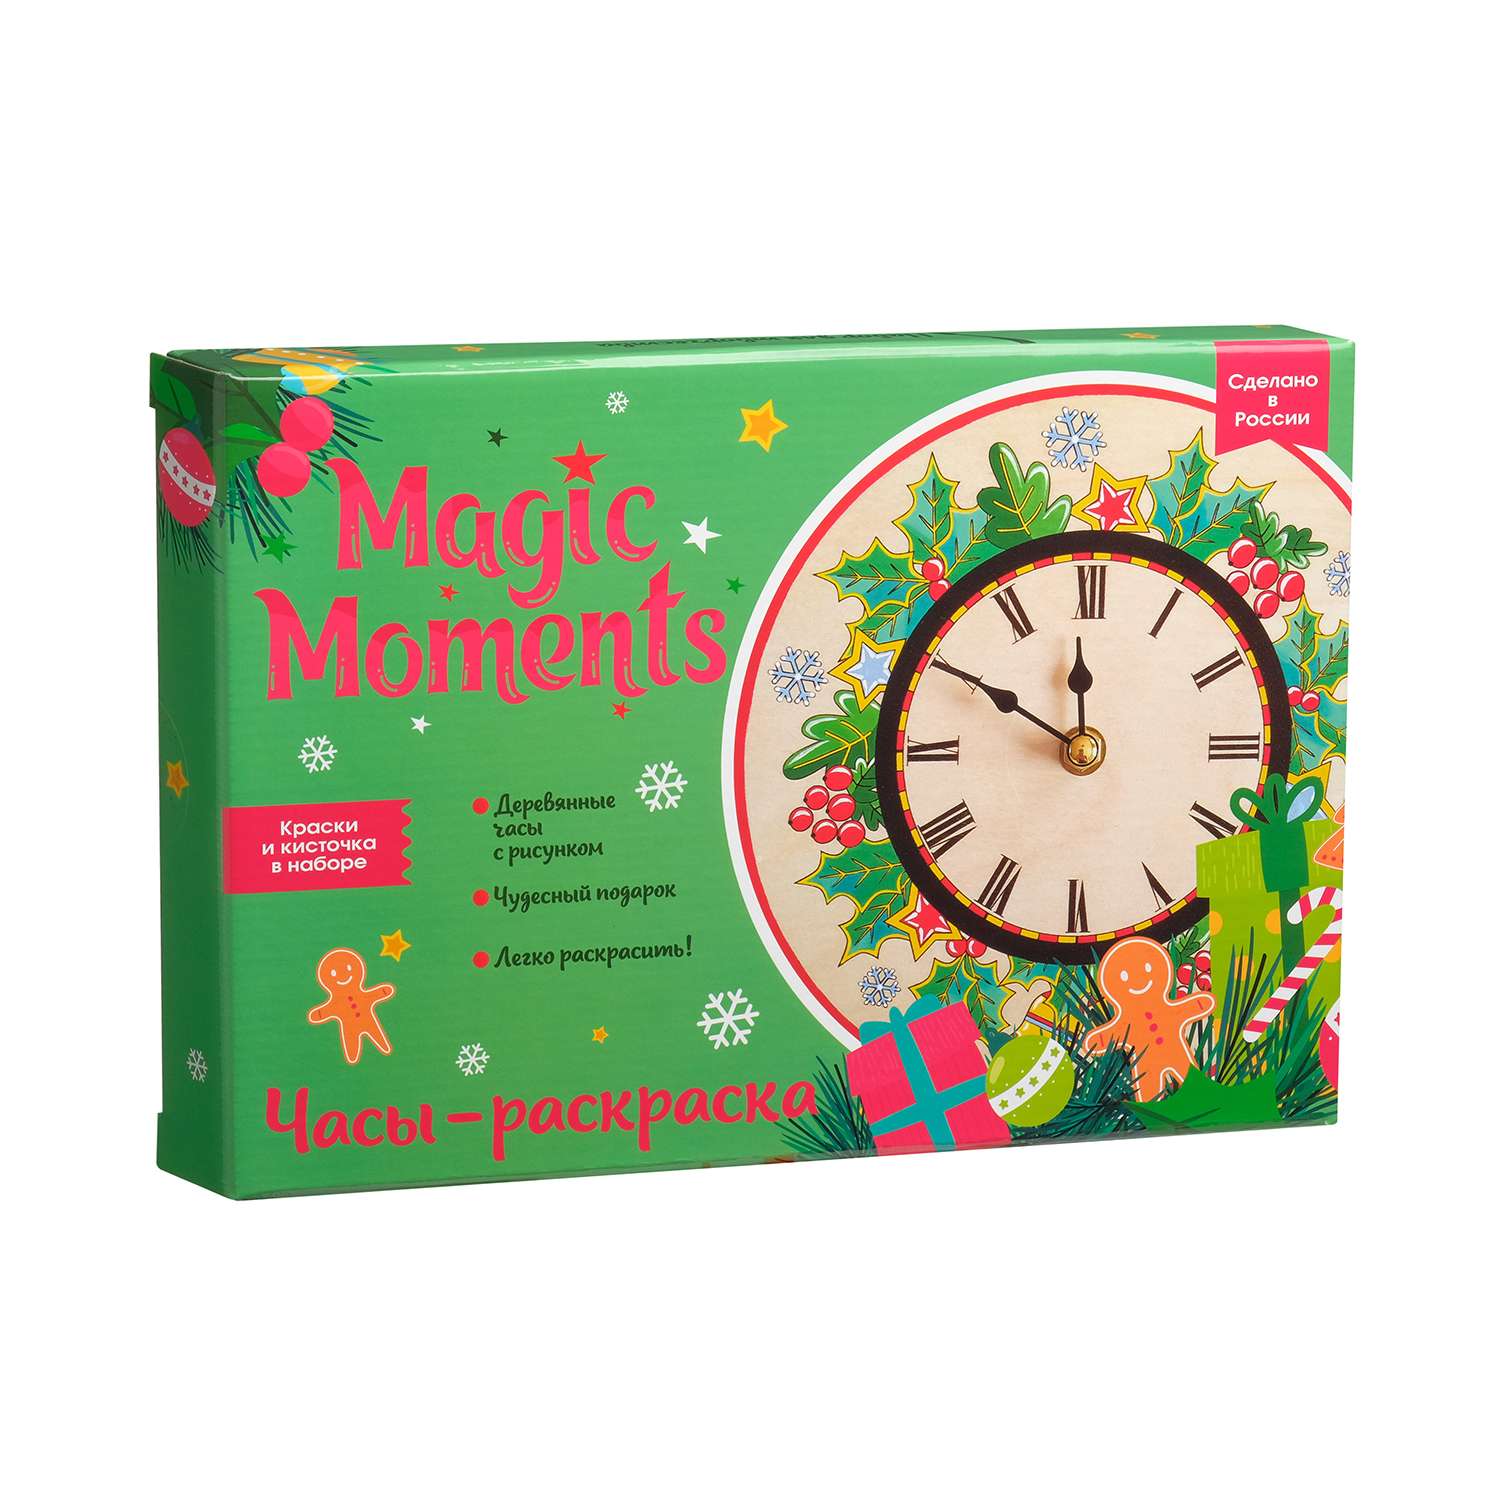 Часы-раскраска Magic Moments Новогодний набор для росписи - фото 1